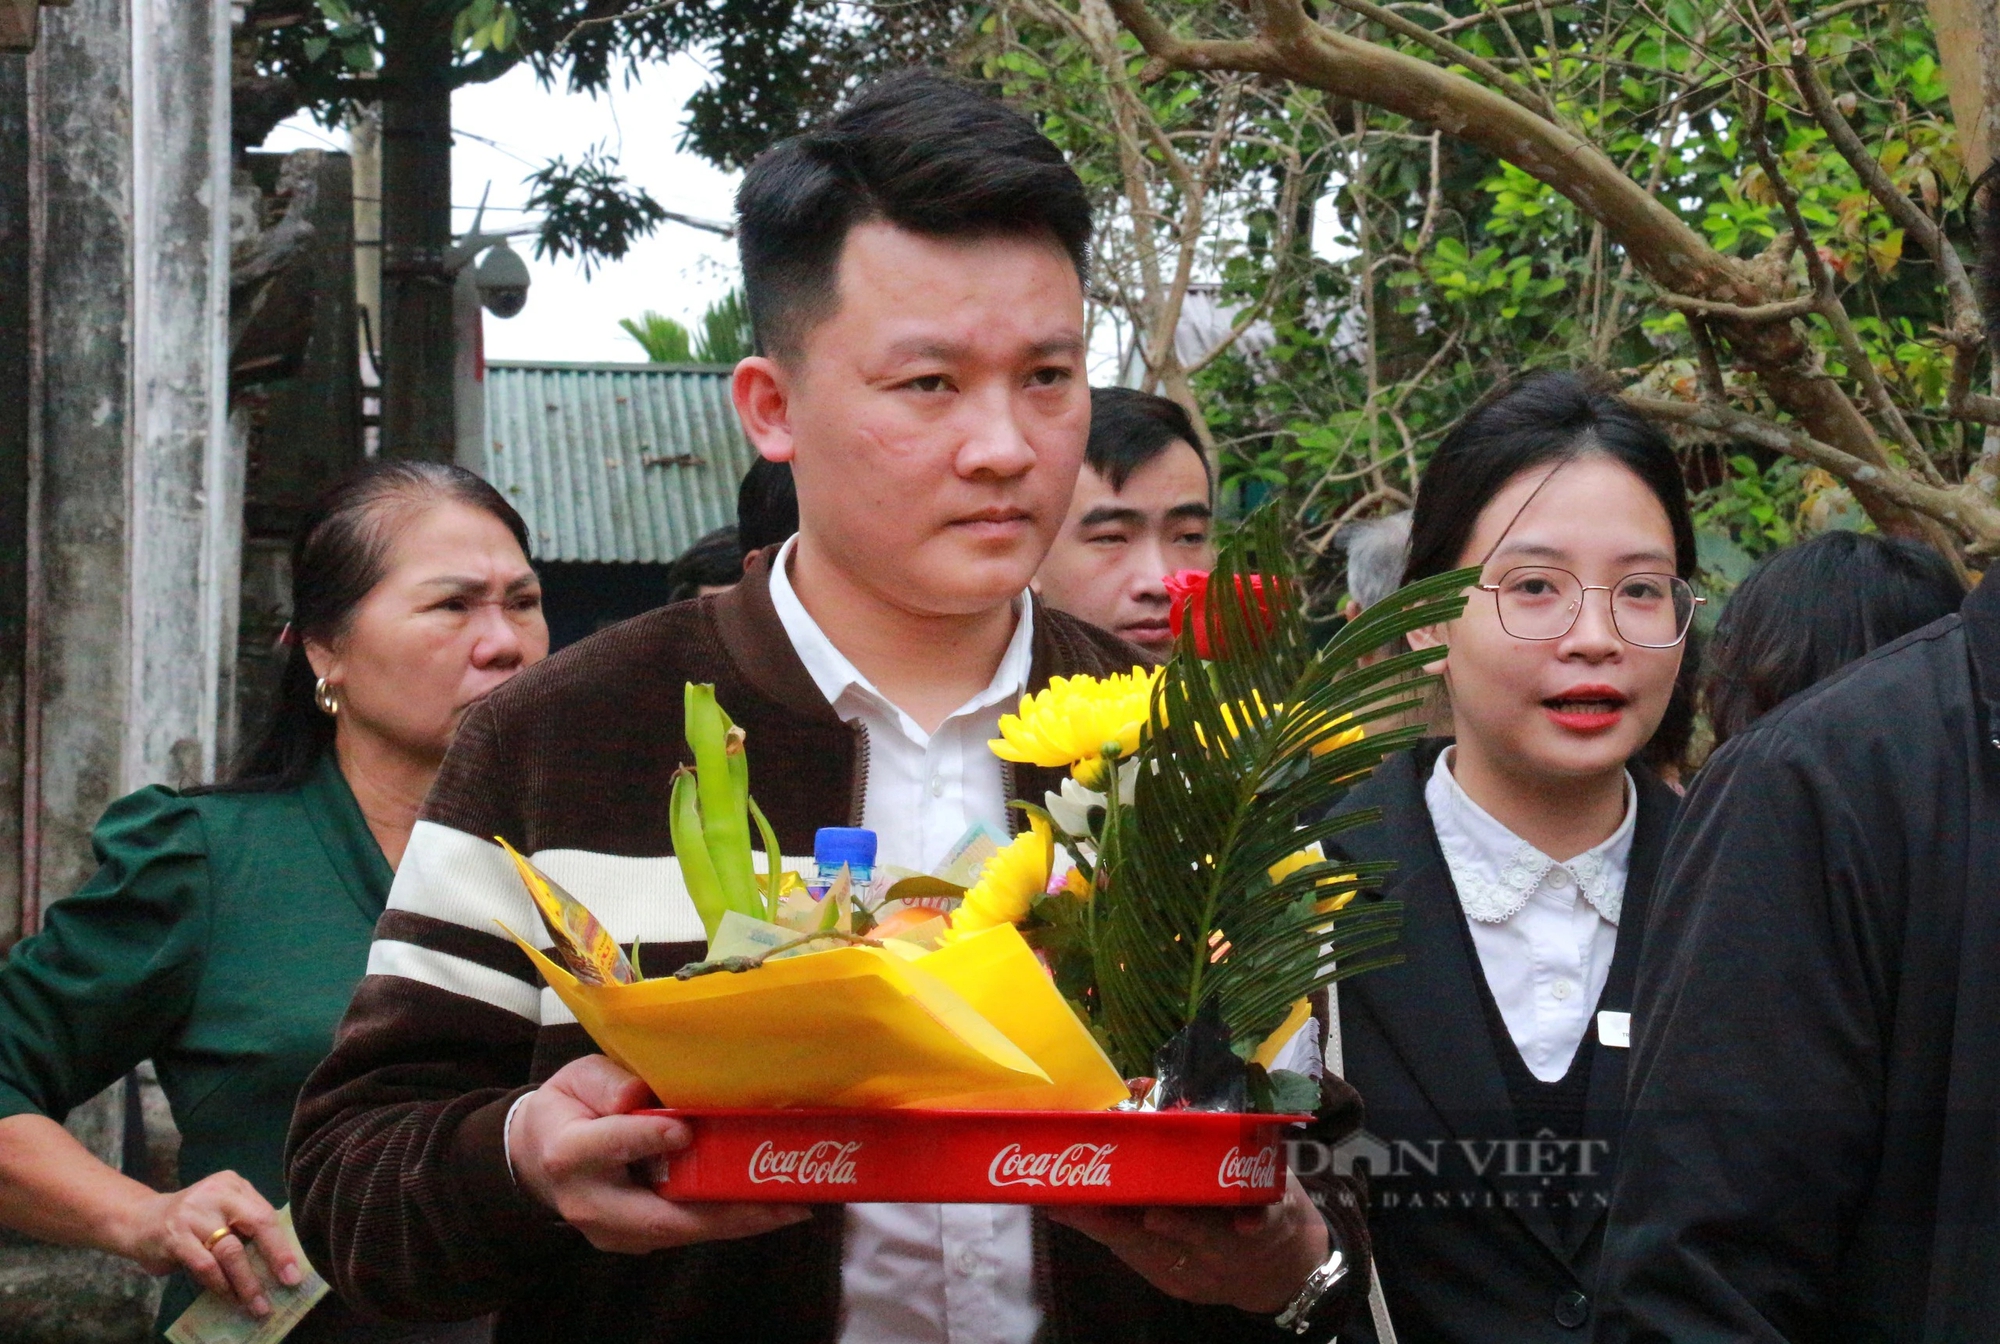 Hàng vạn người thập phương nườm nượp đổ về Đền Trần ở Nam Định dù chưa đến ngày chính lễ- Ảnh 4.